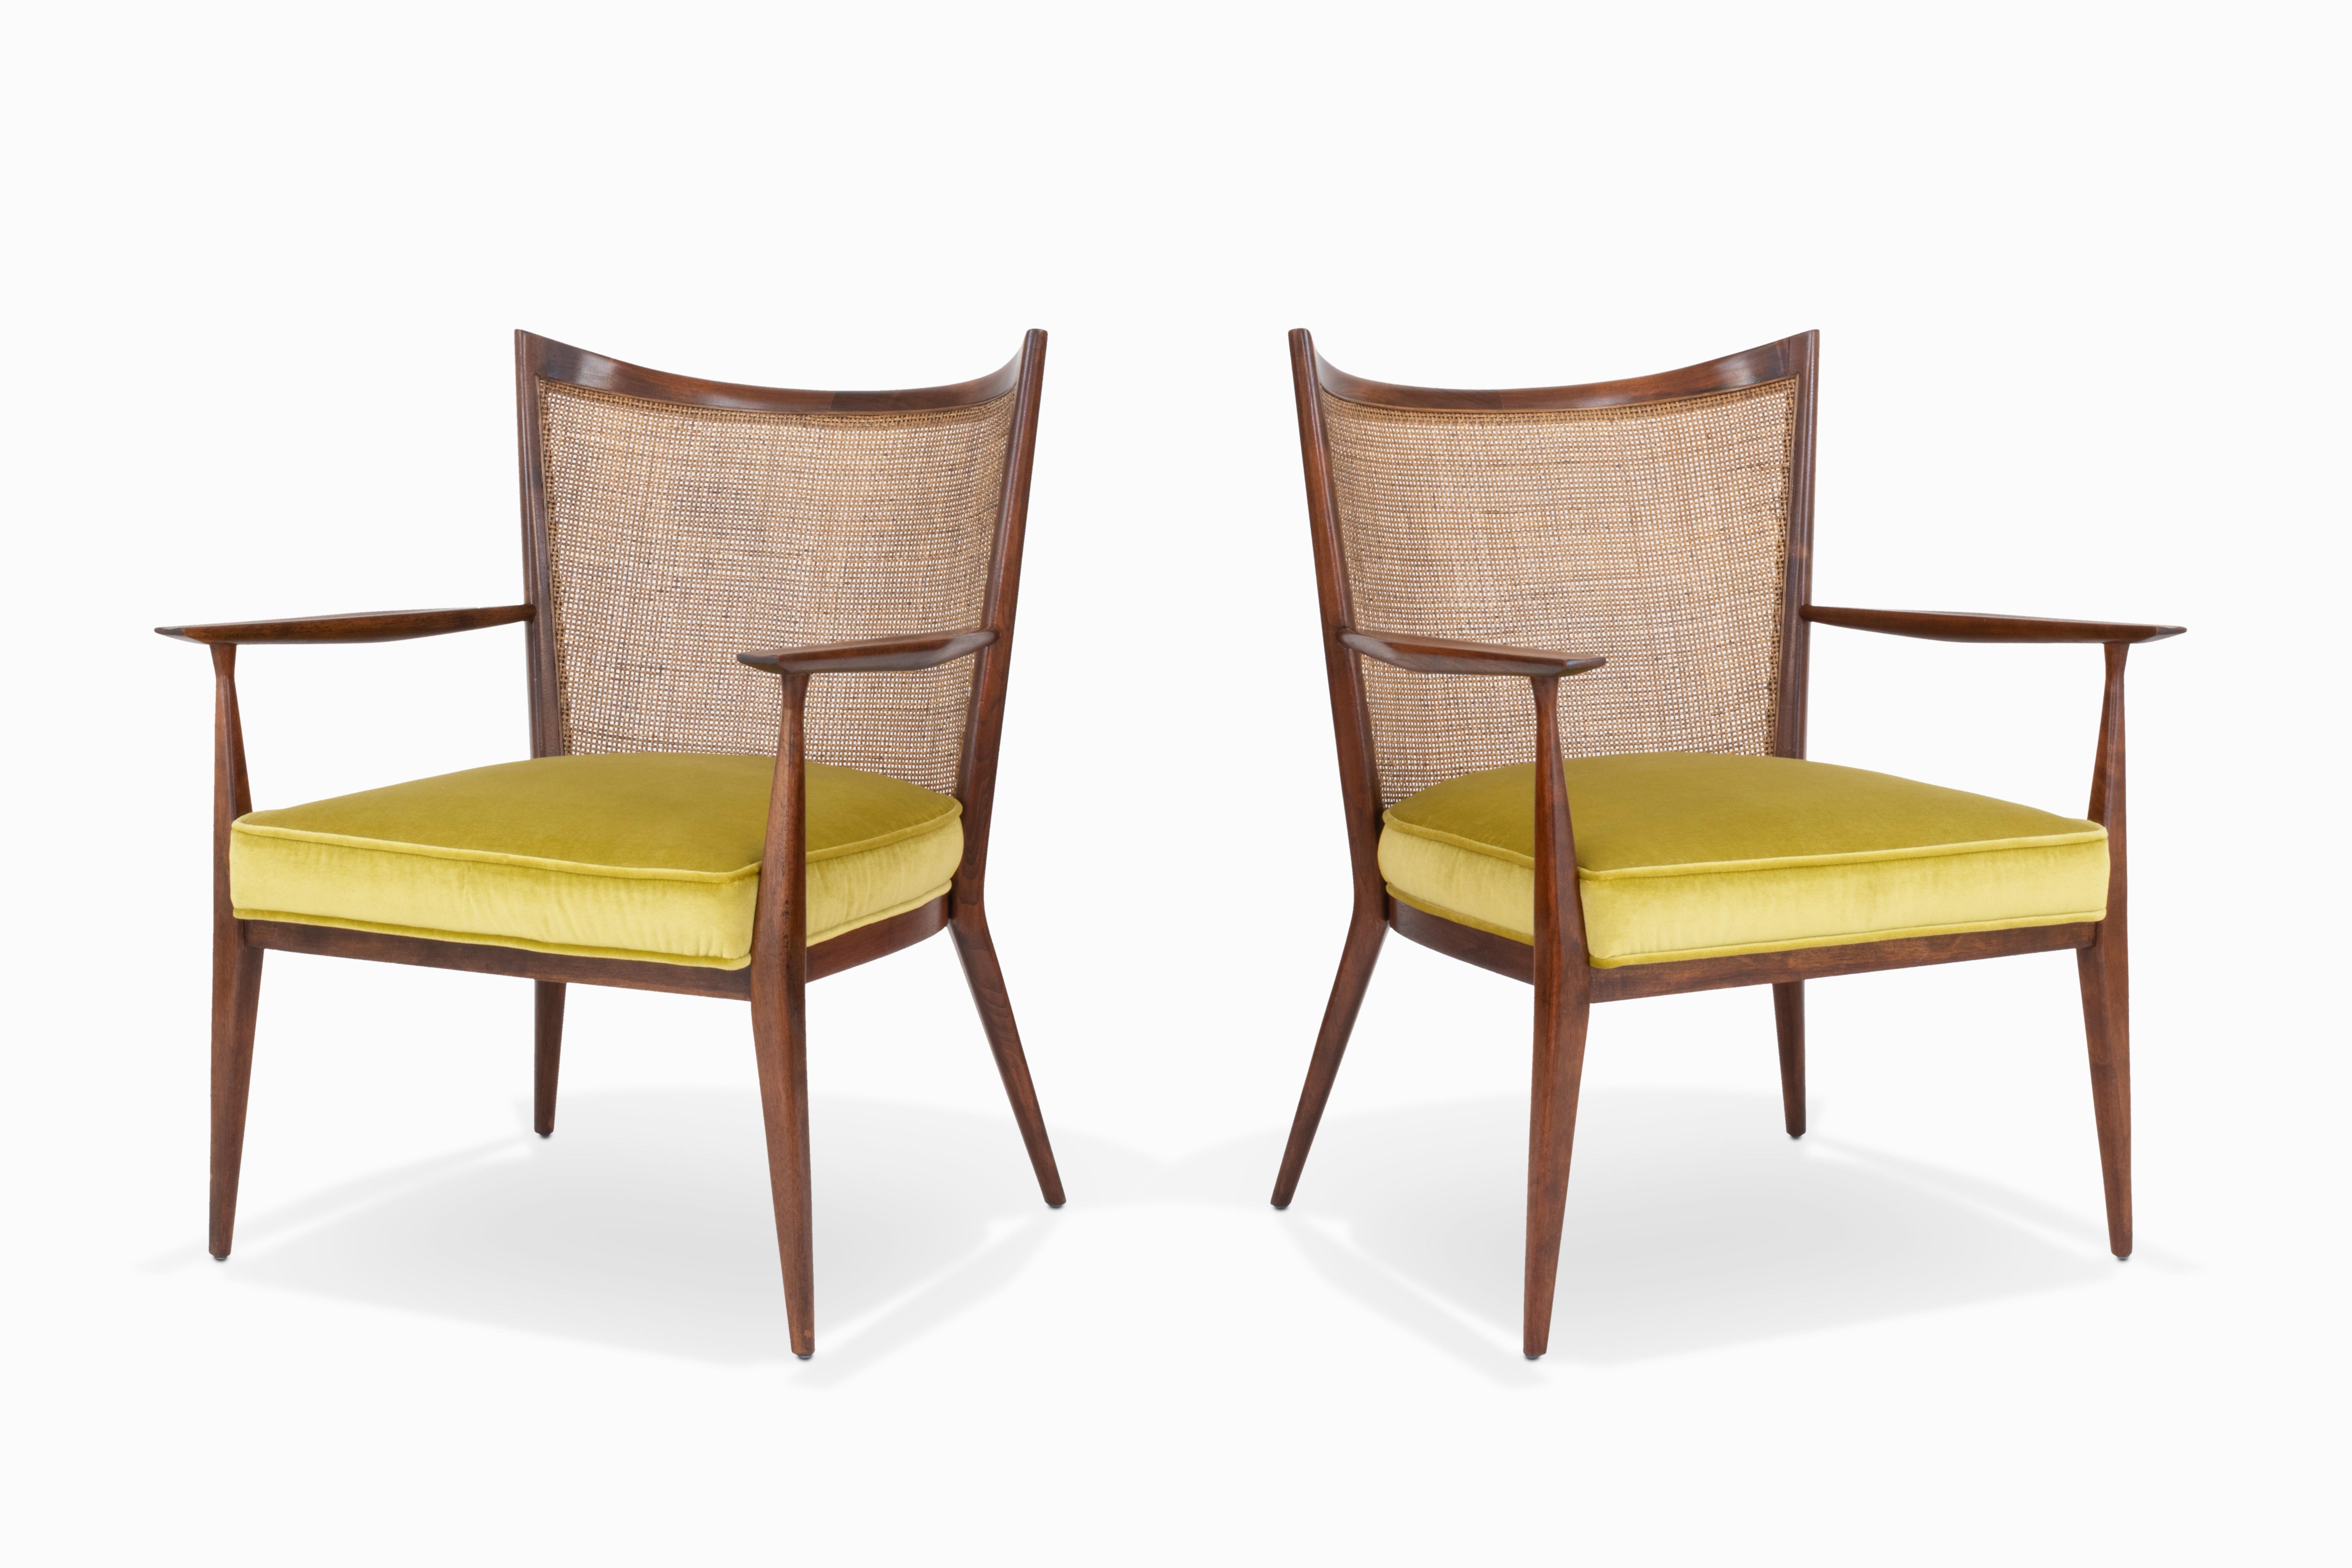 Voici une magnifique paire de chaises longues à dossier en rotin, conçues par Paul McCobb pour Directional. Les cadres et le cannage sont dans leur état d'origine, accompagnés de coussins d'assise nouvellement tapissés d'un ravissant velours